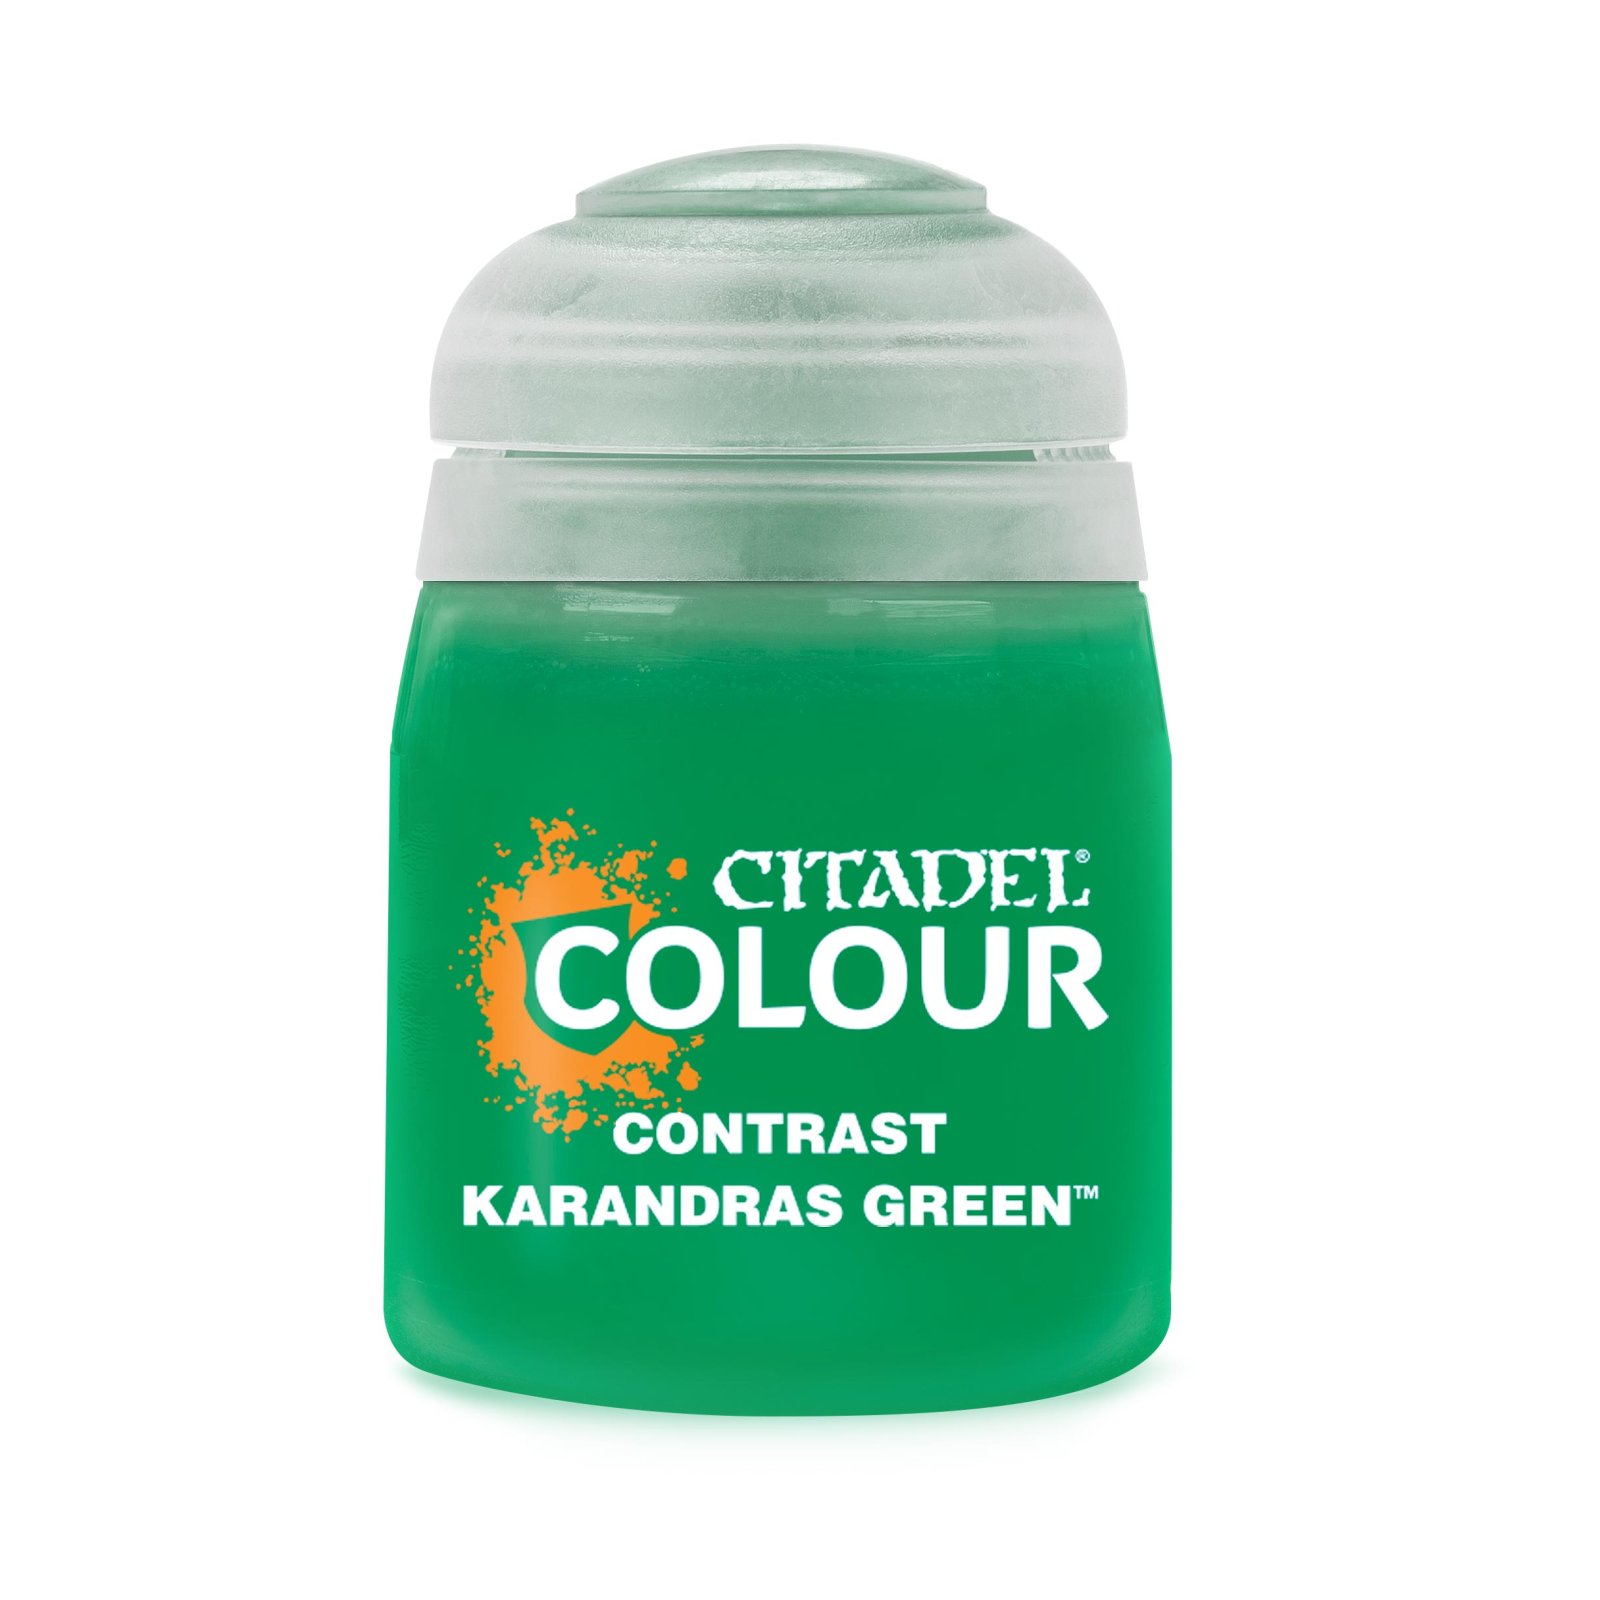 Citadel Colour – Contrast – Karandras Green